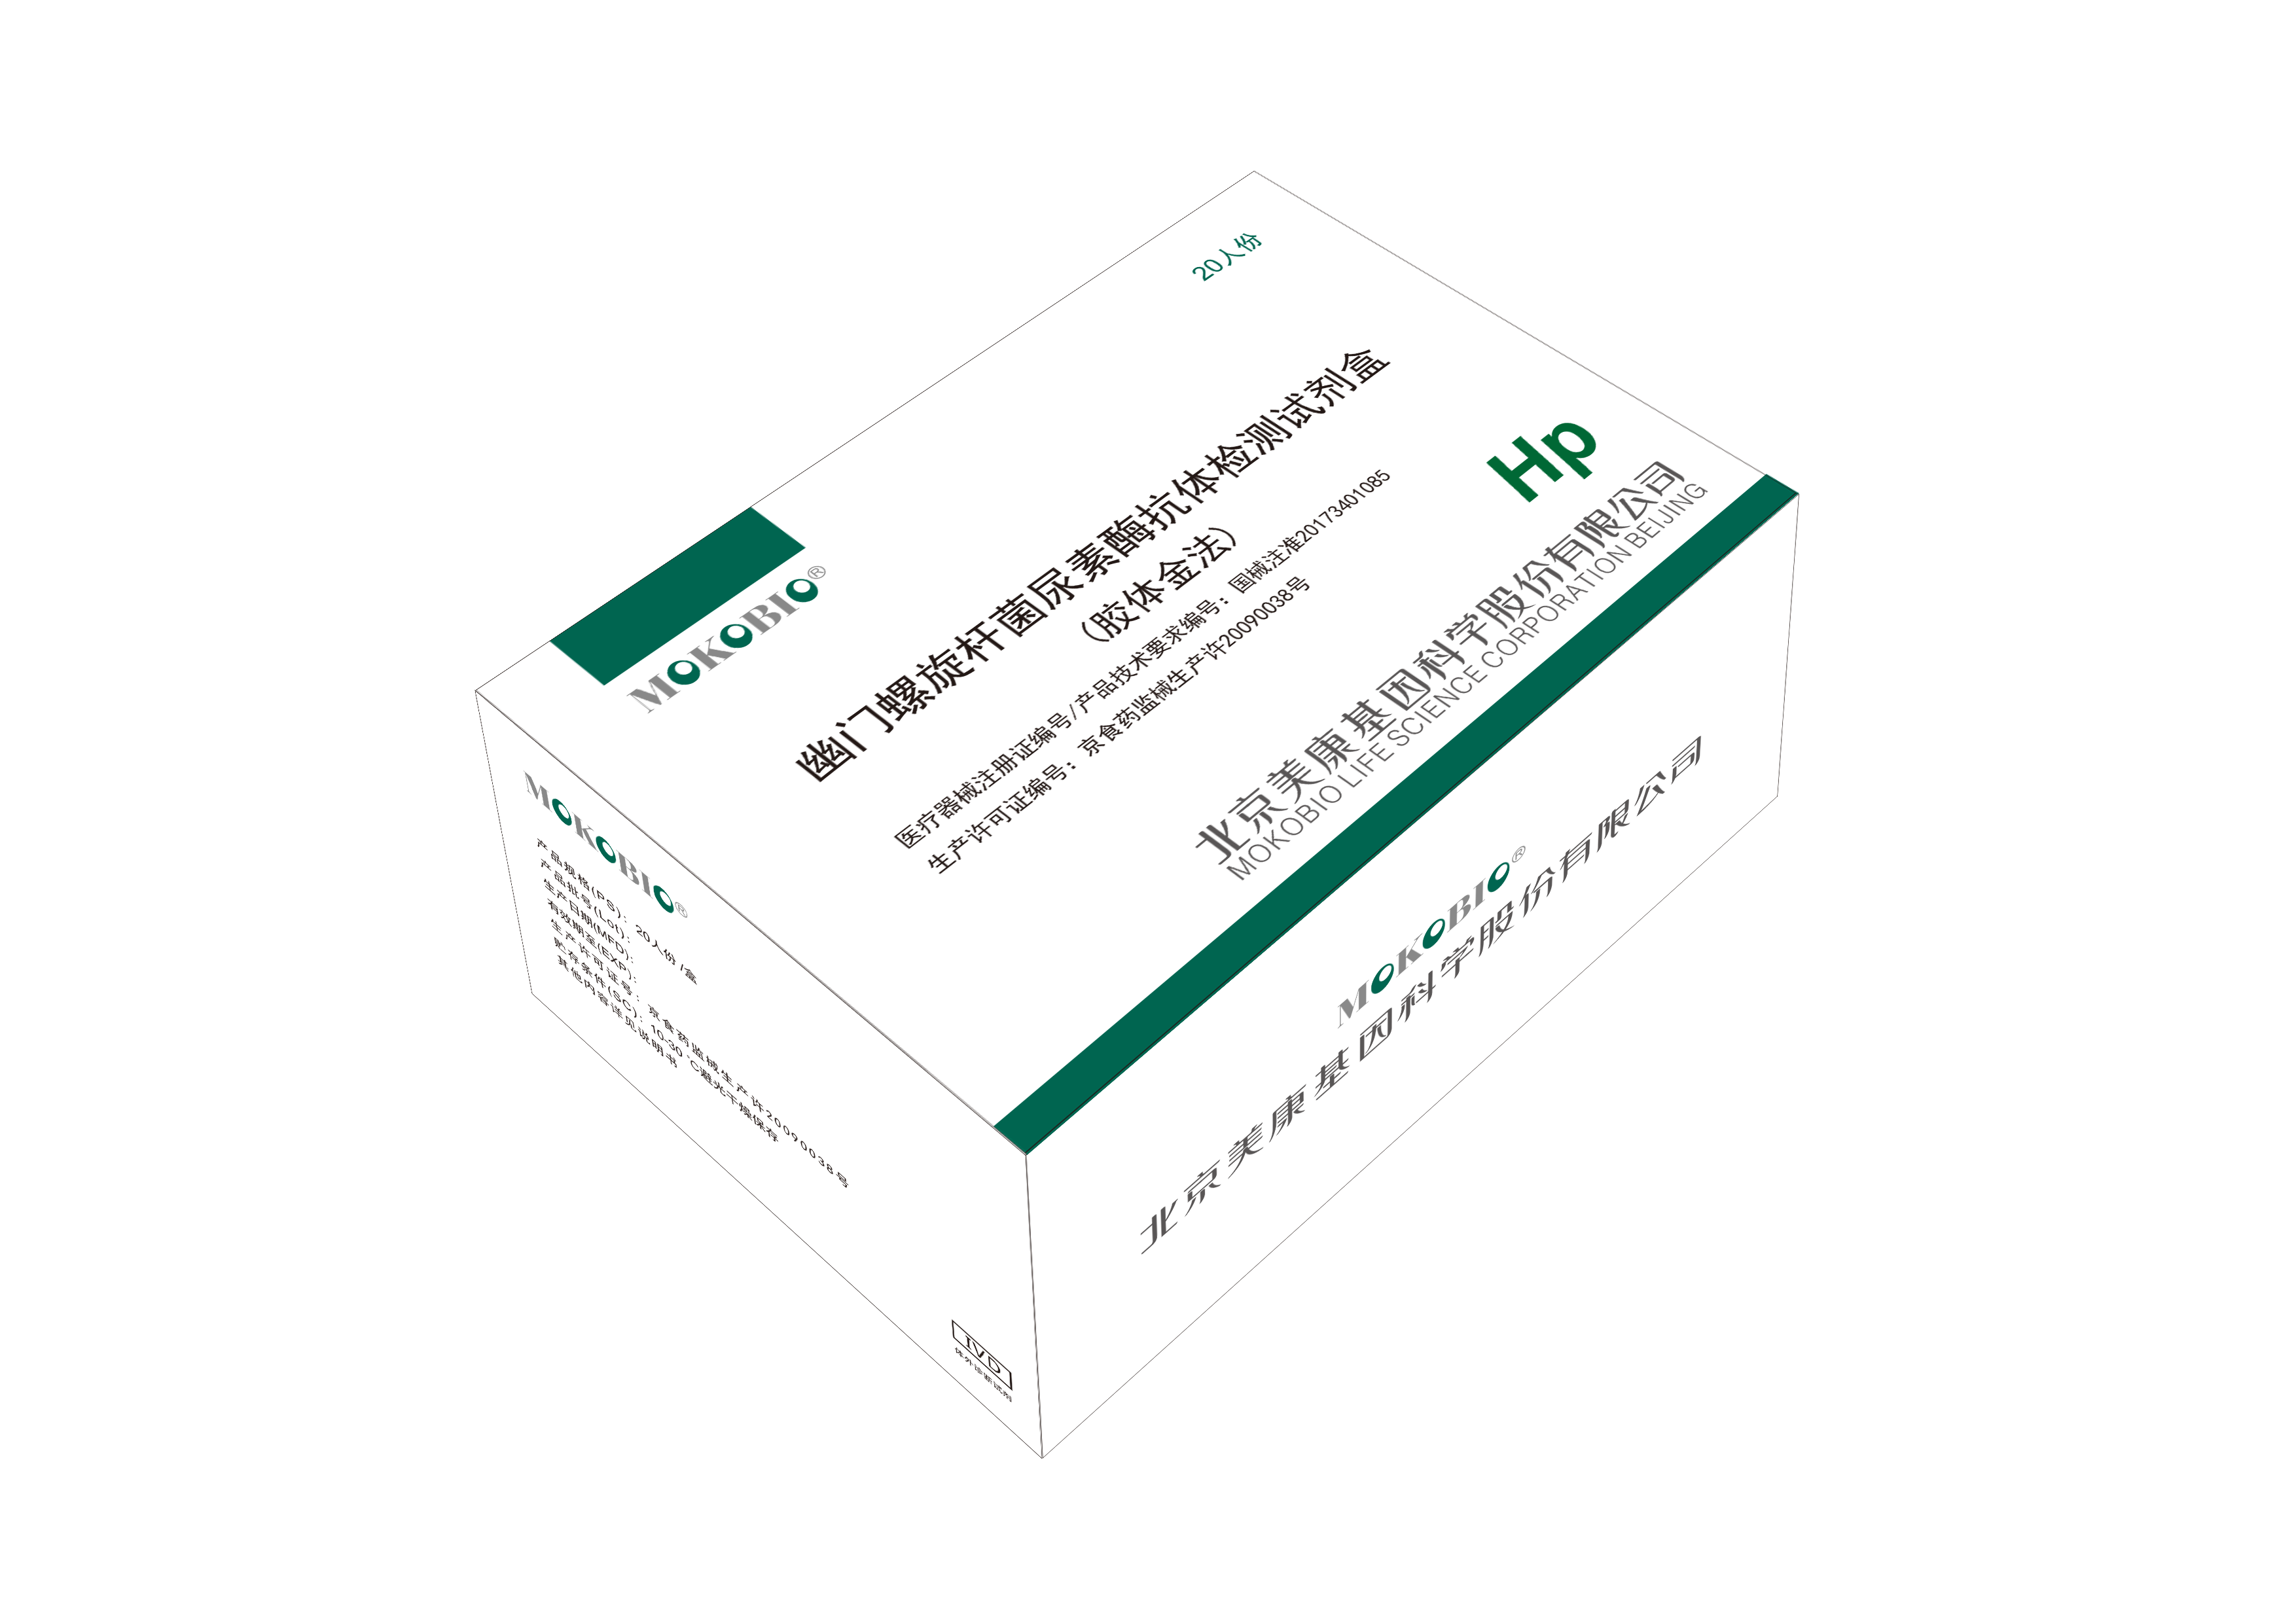 【美康】幽门螺旋杆菌尿素酶抗体检测试剂盒（胶体金法）+胶体金免疫分析仪（Mokosensor-A300）